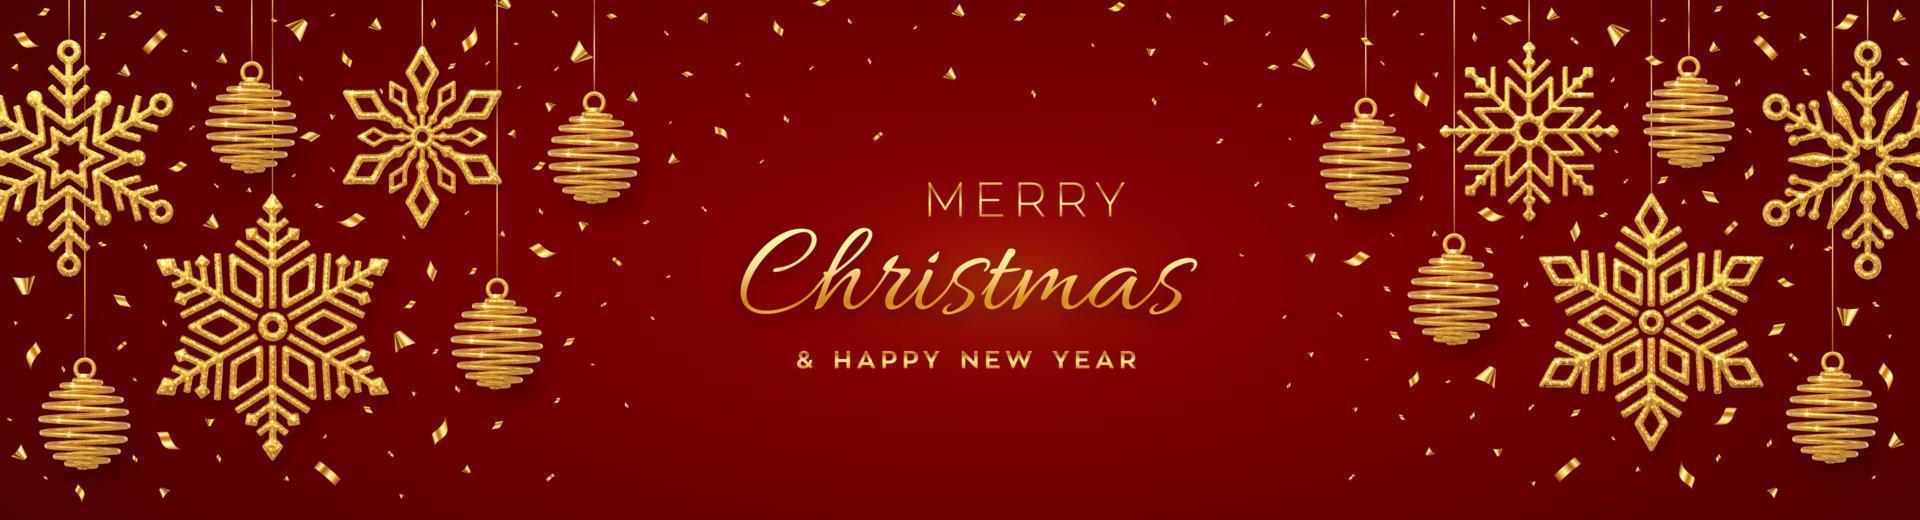 jul röd bakgrund med hängande lysande gyllene snöflingor och bollar. god jul gratulationskort. semester xmas och nyår affisch, webbbanner. vektor illustration.